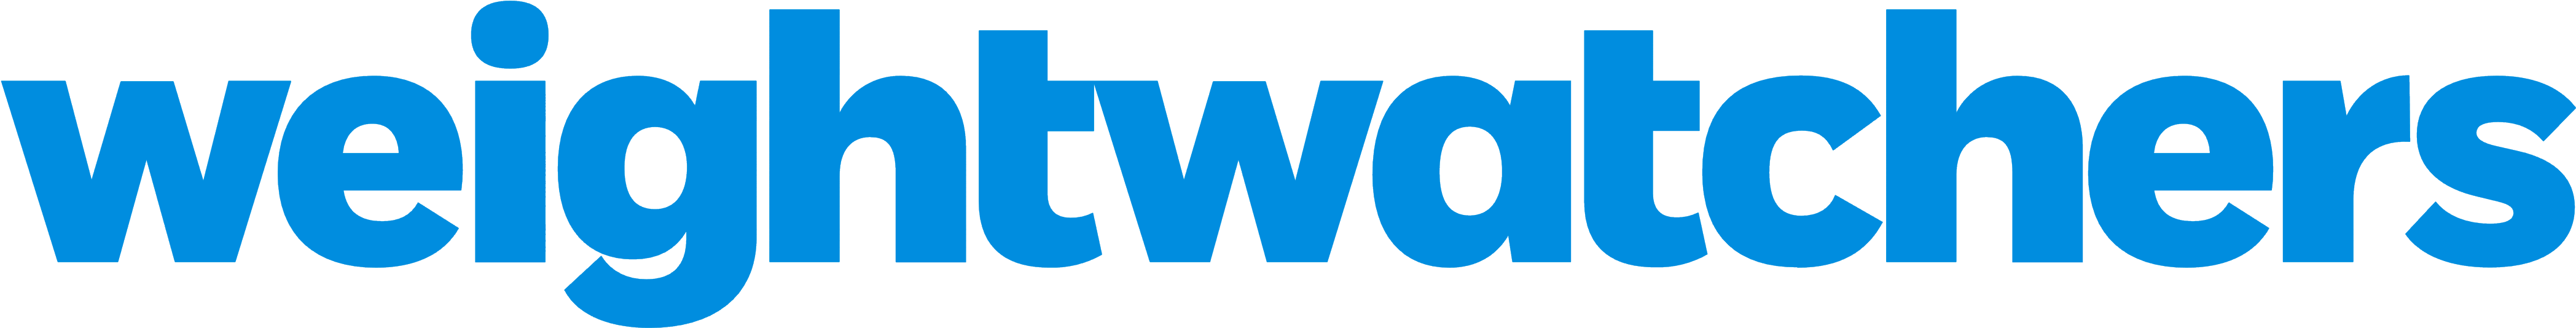 Most Weight Watchers Logo Vector Logos Download - Most Weight Watchers Logo Vector Logos Download (4205x758)